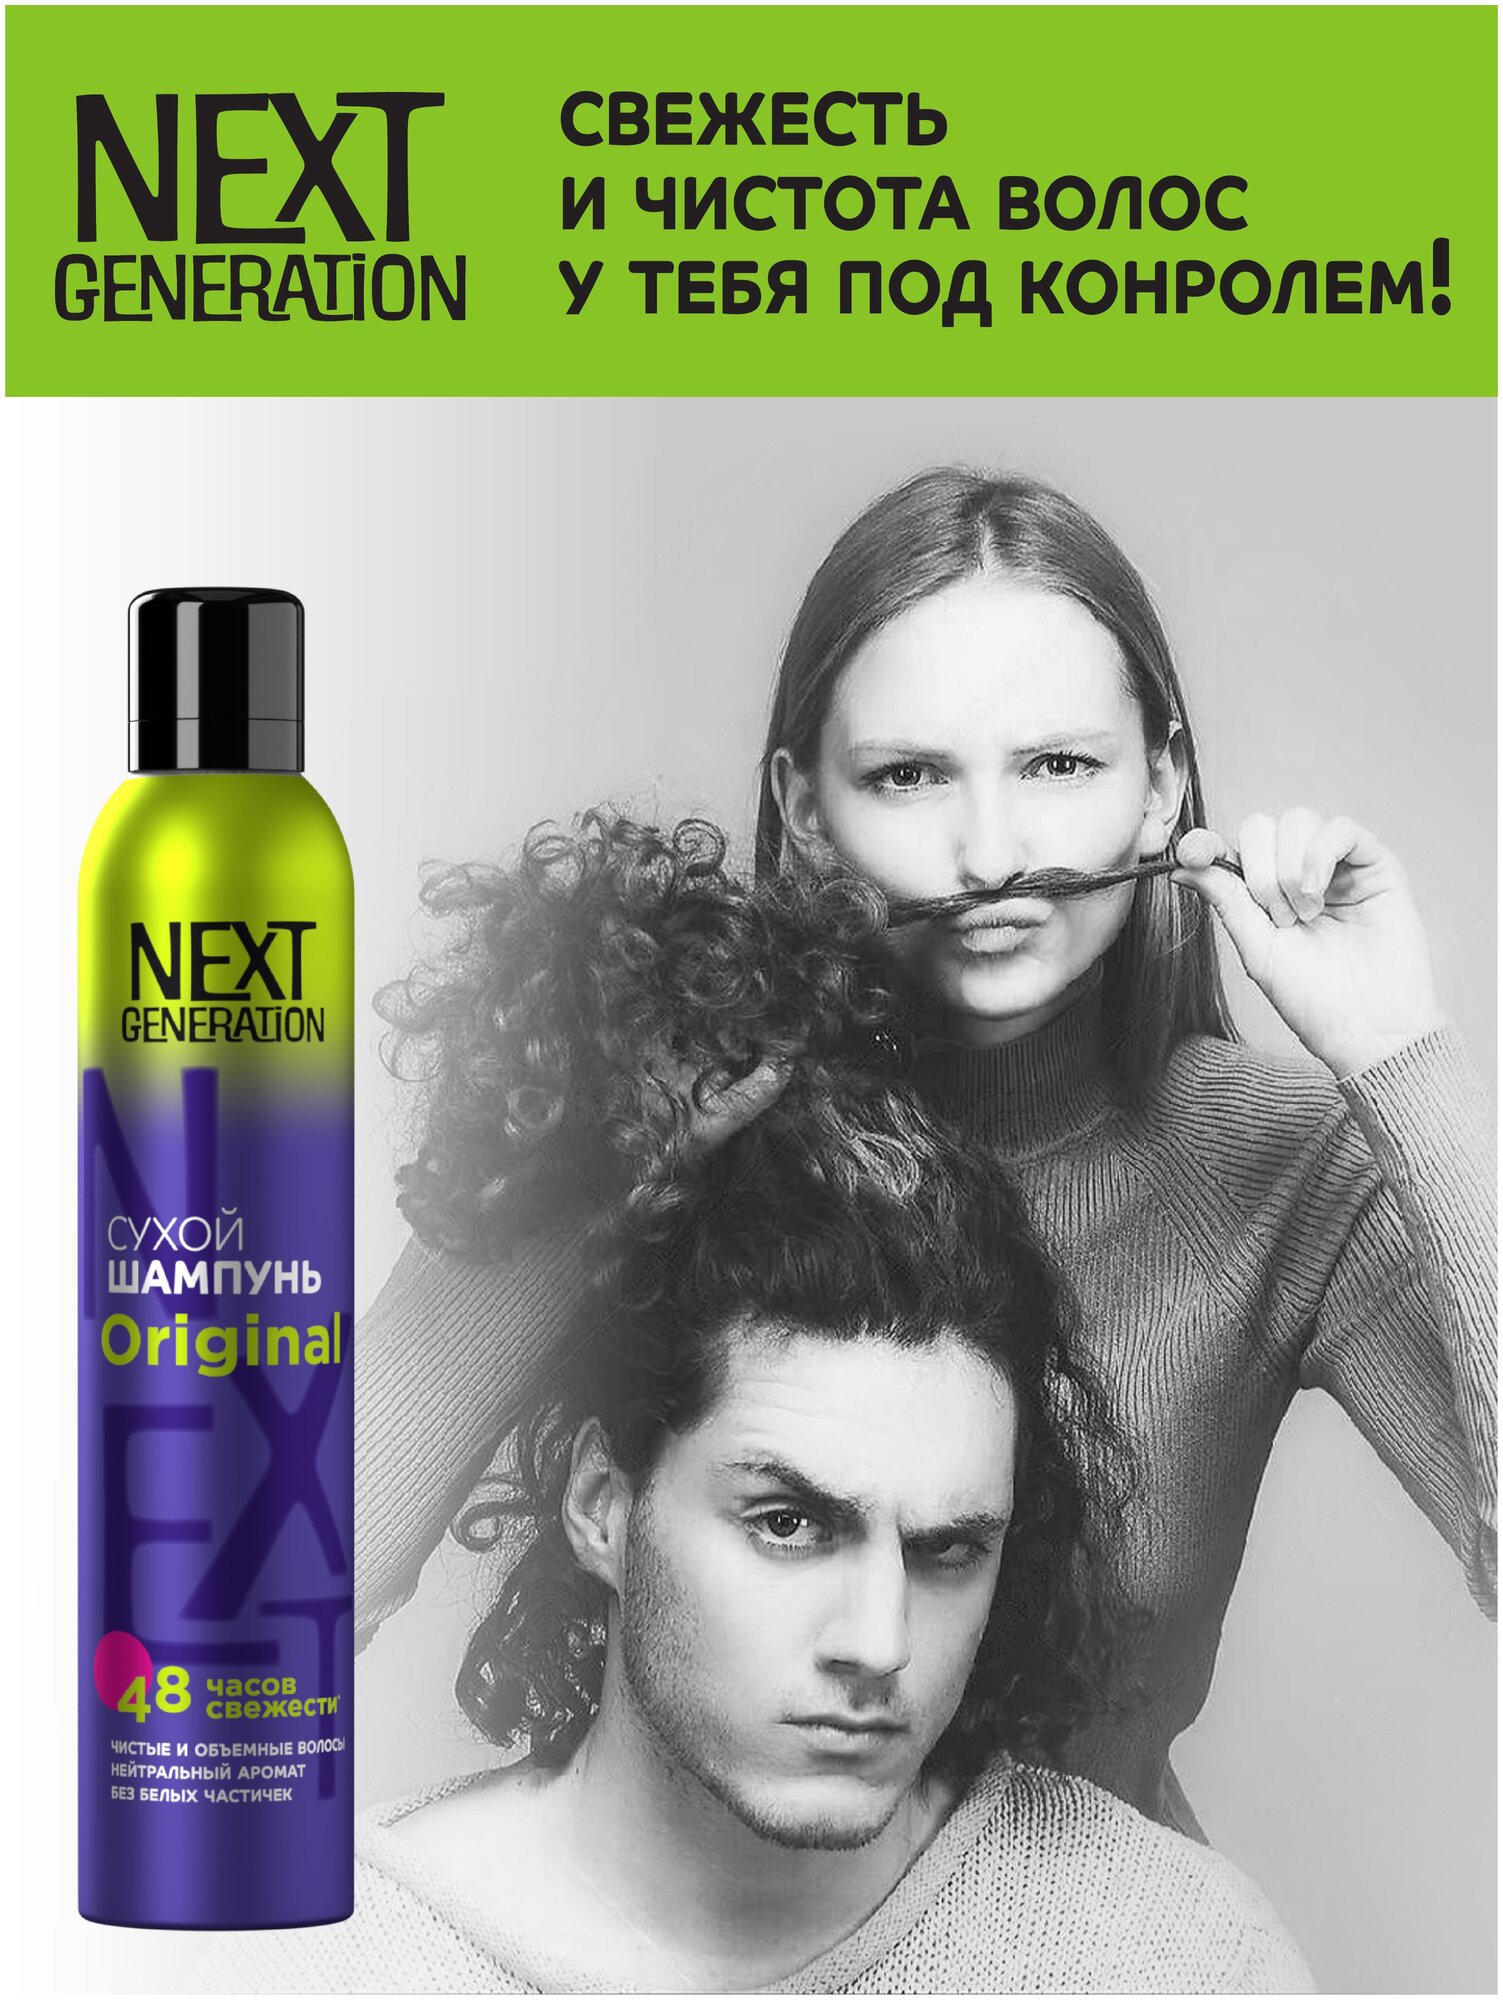 Сухой шампунь для волос Next Generation Original Для нее и для него,200 см3 - фотография № 4